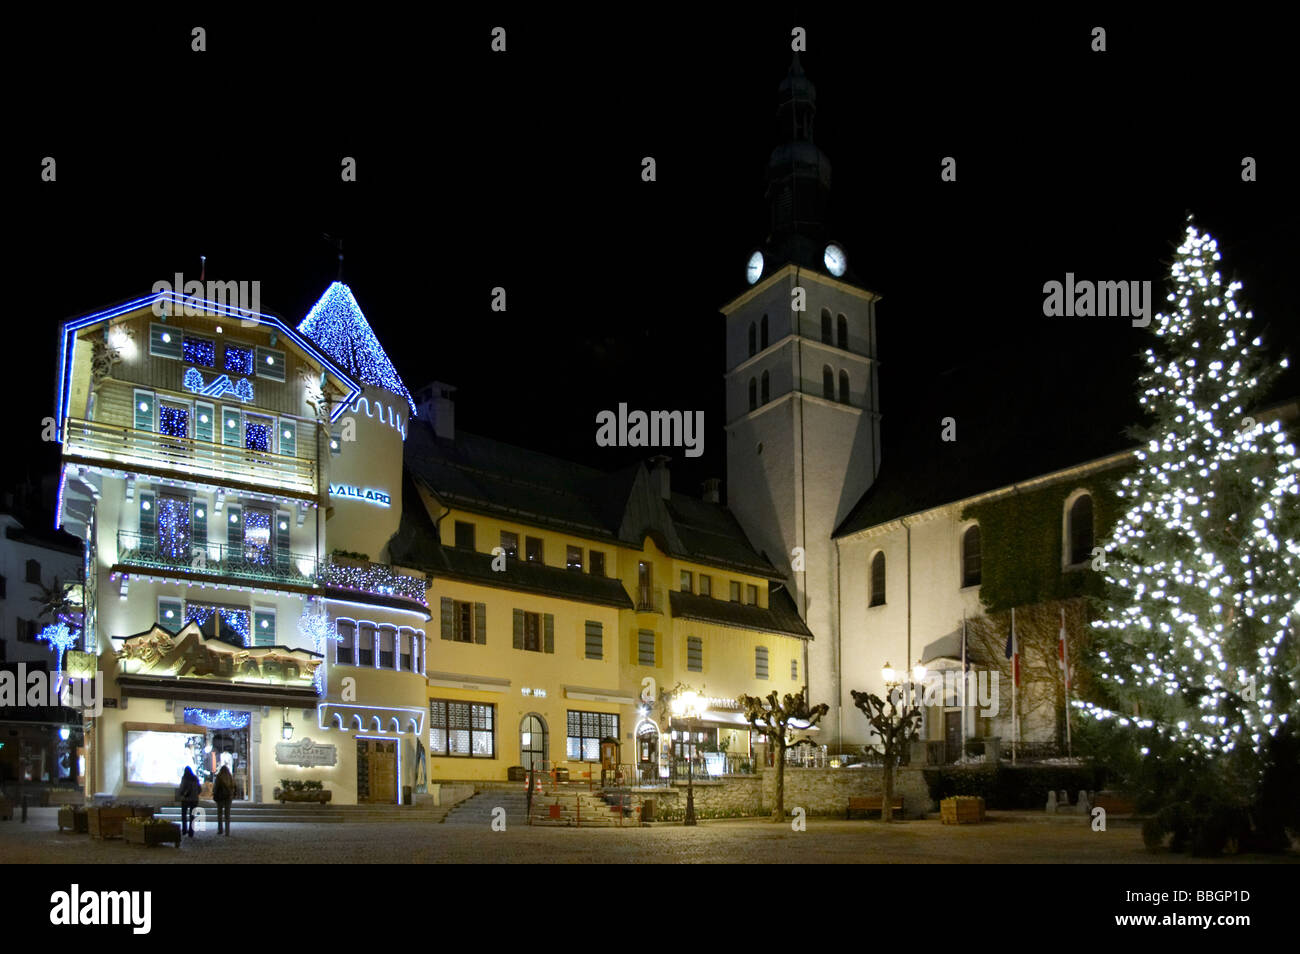 Place de la ville et l'église de Megève Megève France Alpes Europe la nuit Banque D'Images